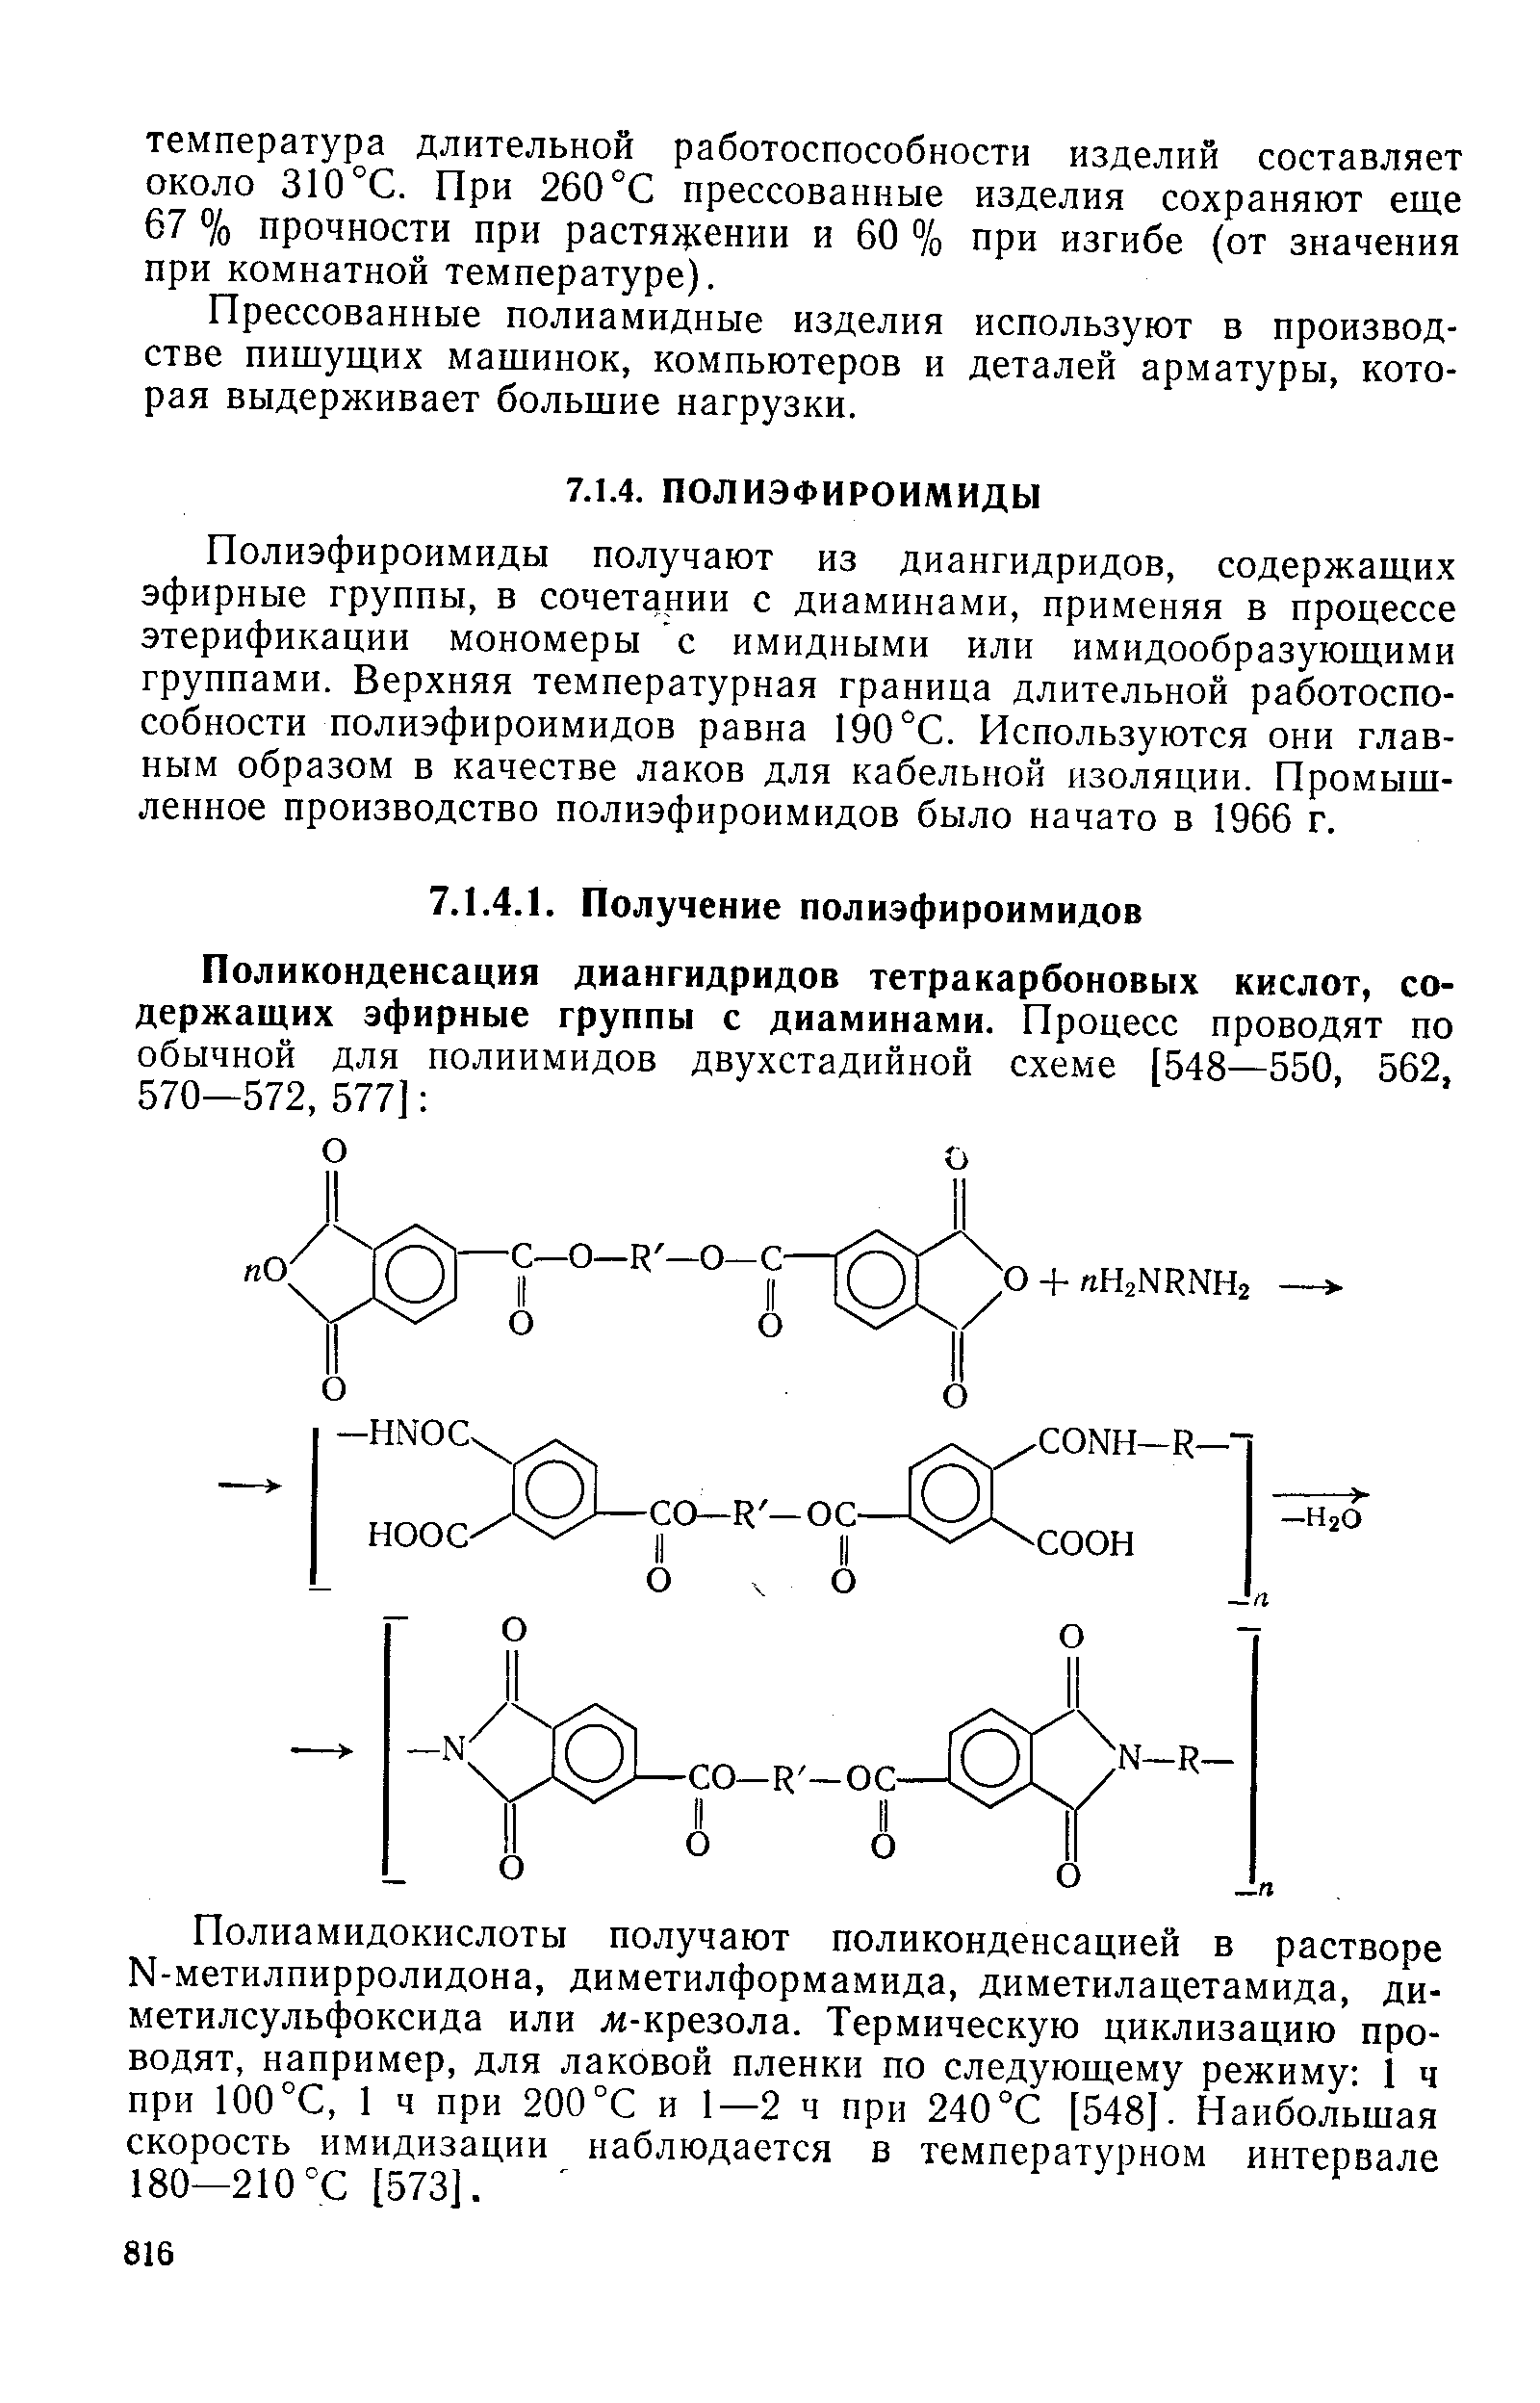 Полиэфироимиды получают из диангидридов, содержащих эфирные группы, в сочетании с диаминами, применяя в процессе этерификации мономеры с имидными или имидообразующими группами. Верхняя температурная граница длительной работоспособности полиэфироимидов равна 190 °С. Используются они главным образом в качестве лаков для кабельной изоляции. Промышленное производство полиэфироимидов было начато в 1966 г.